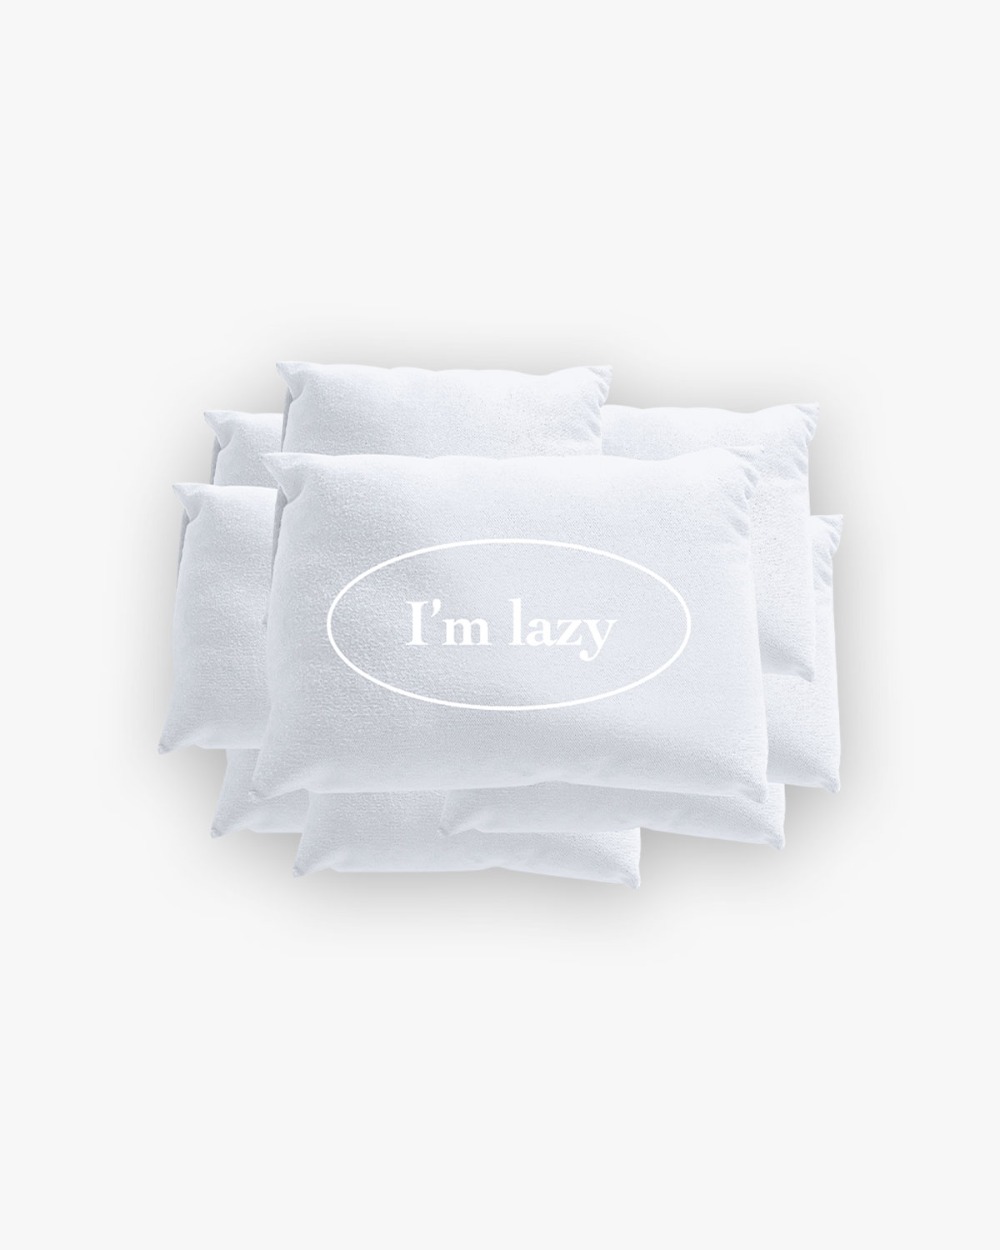 Lazy Pillow Smarttok